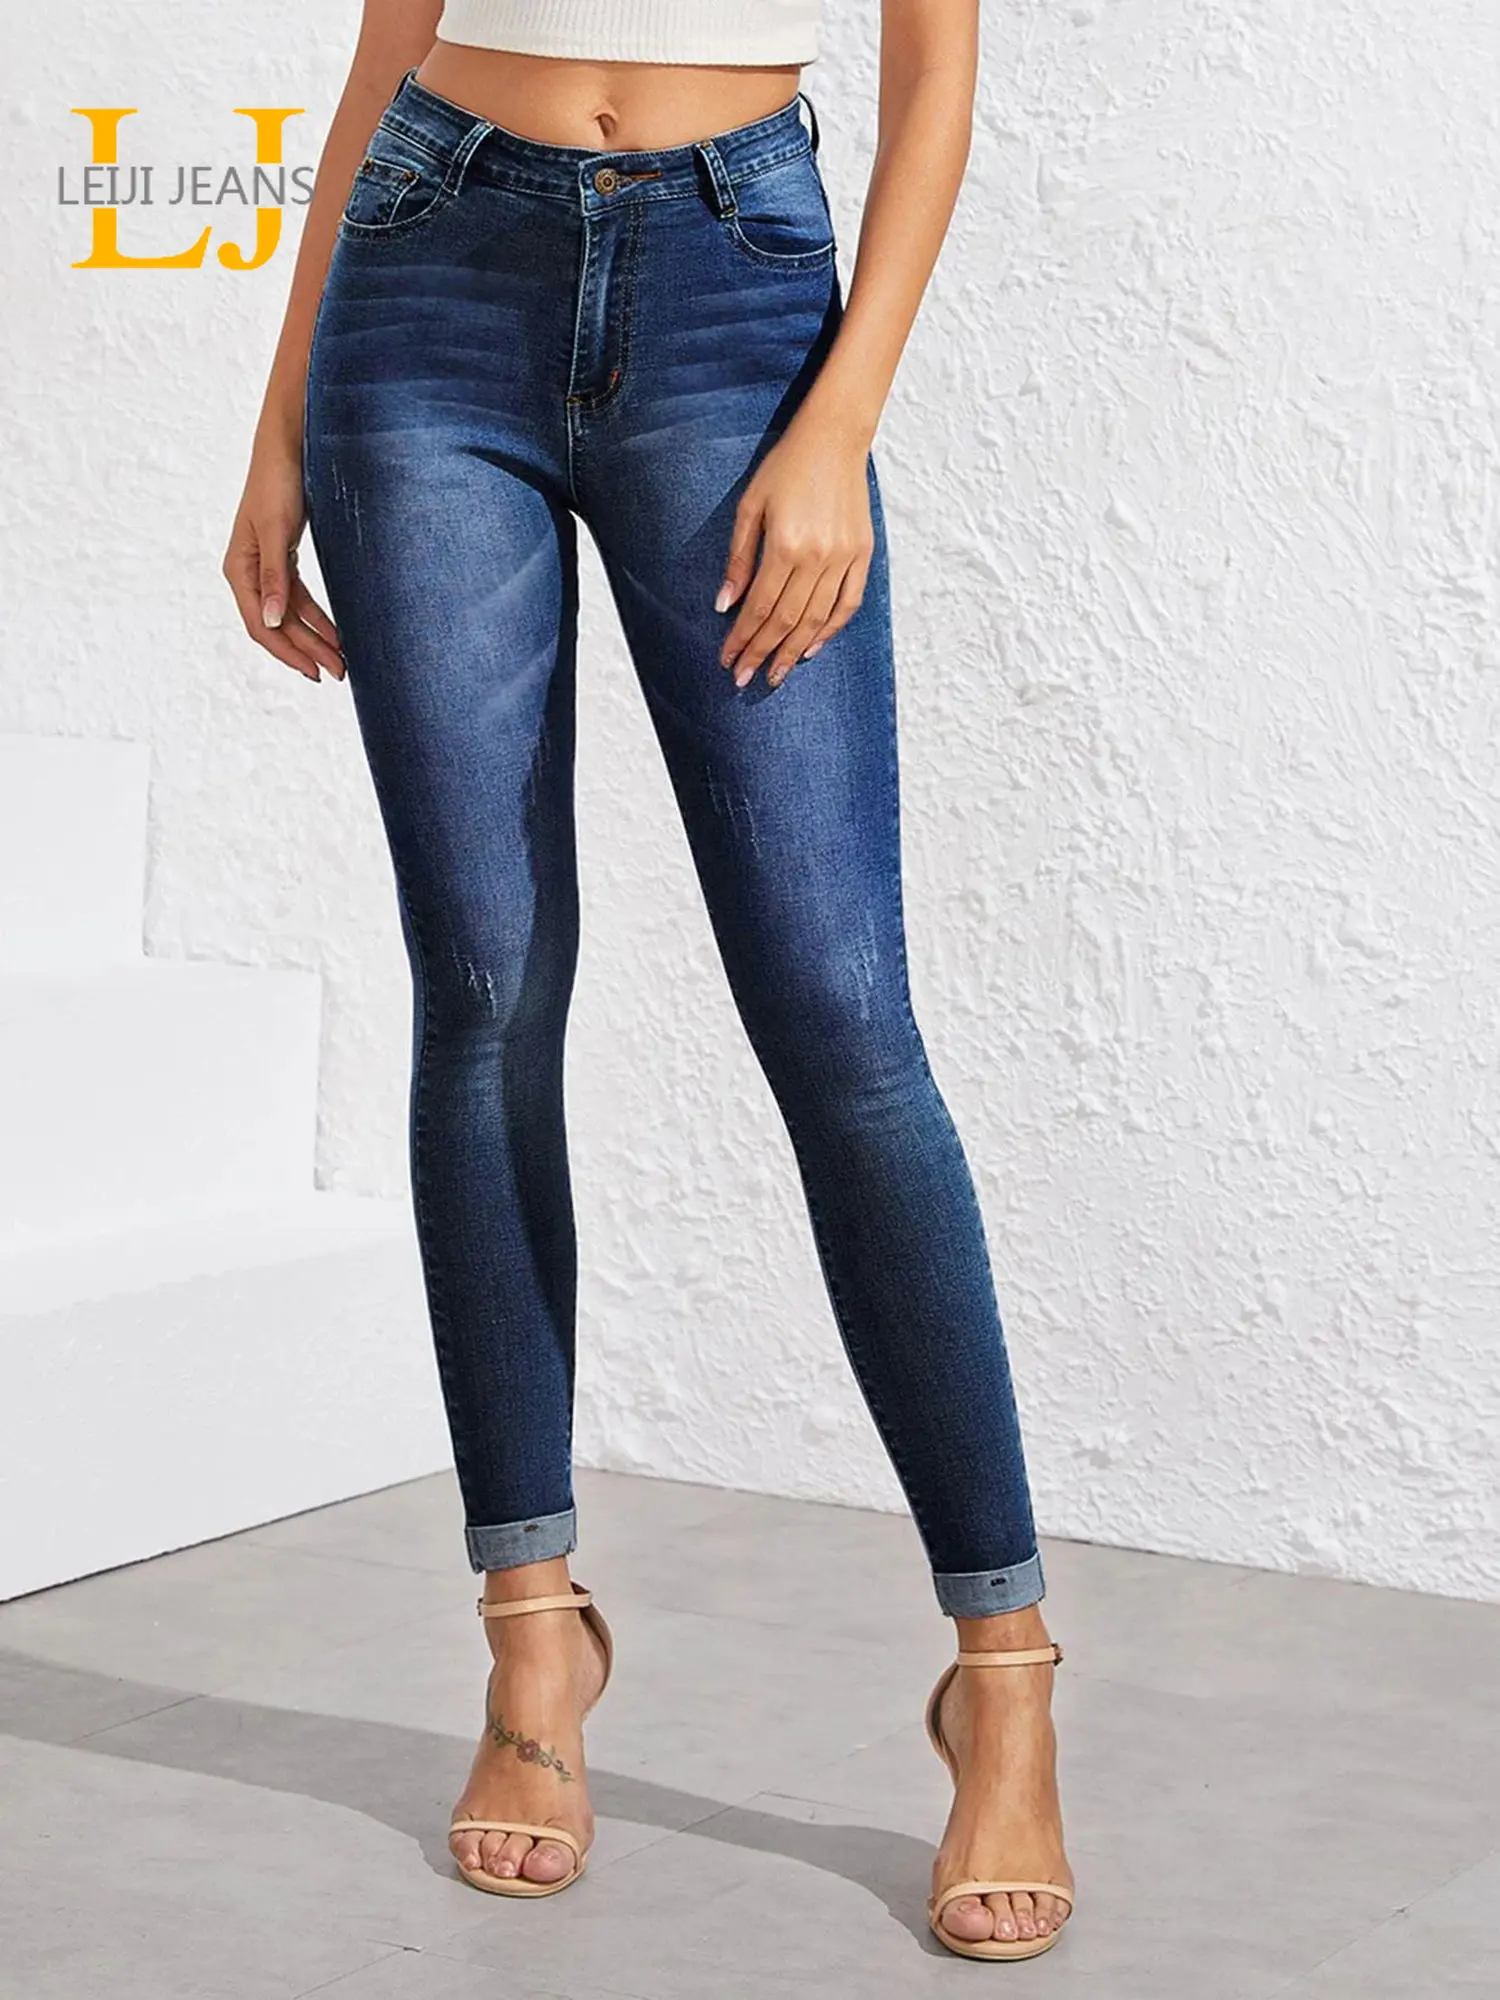 

Женские джинсы с высокой талией, женские джинсы до щиколотки, рваные джинсы с эффектом потертости, джинсы скинни, брюки-карандаш, джинсы для ...